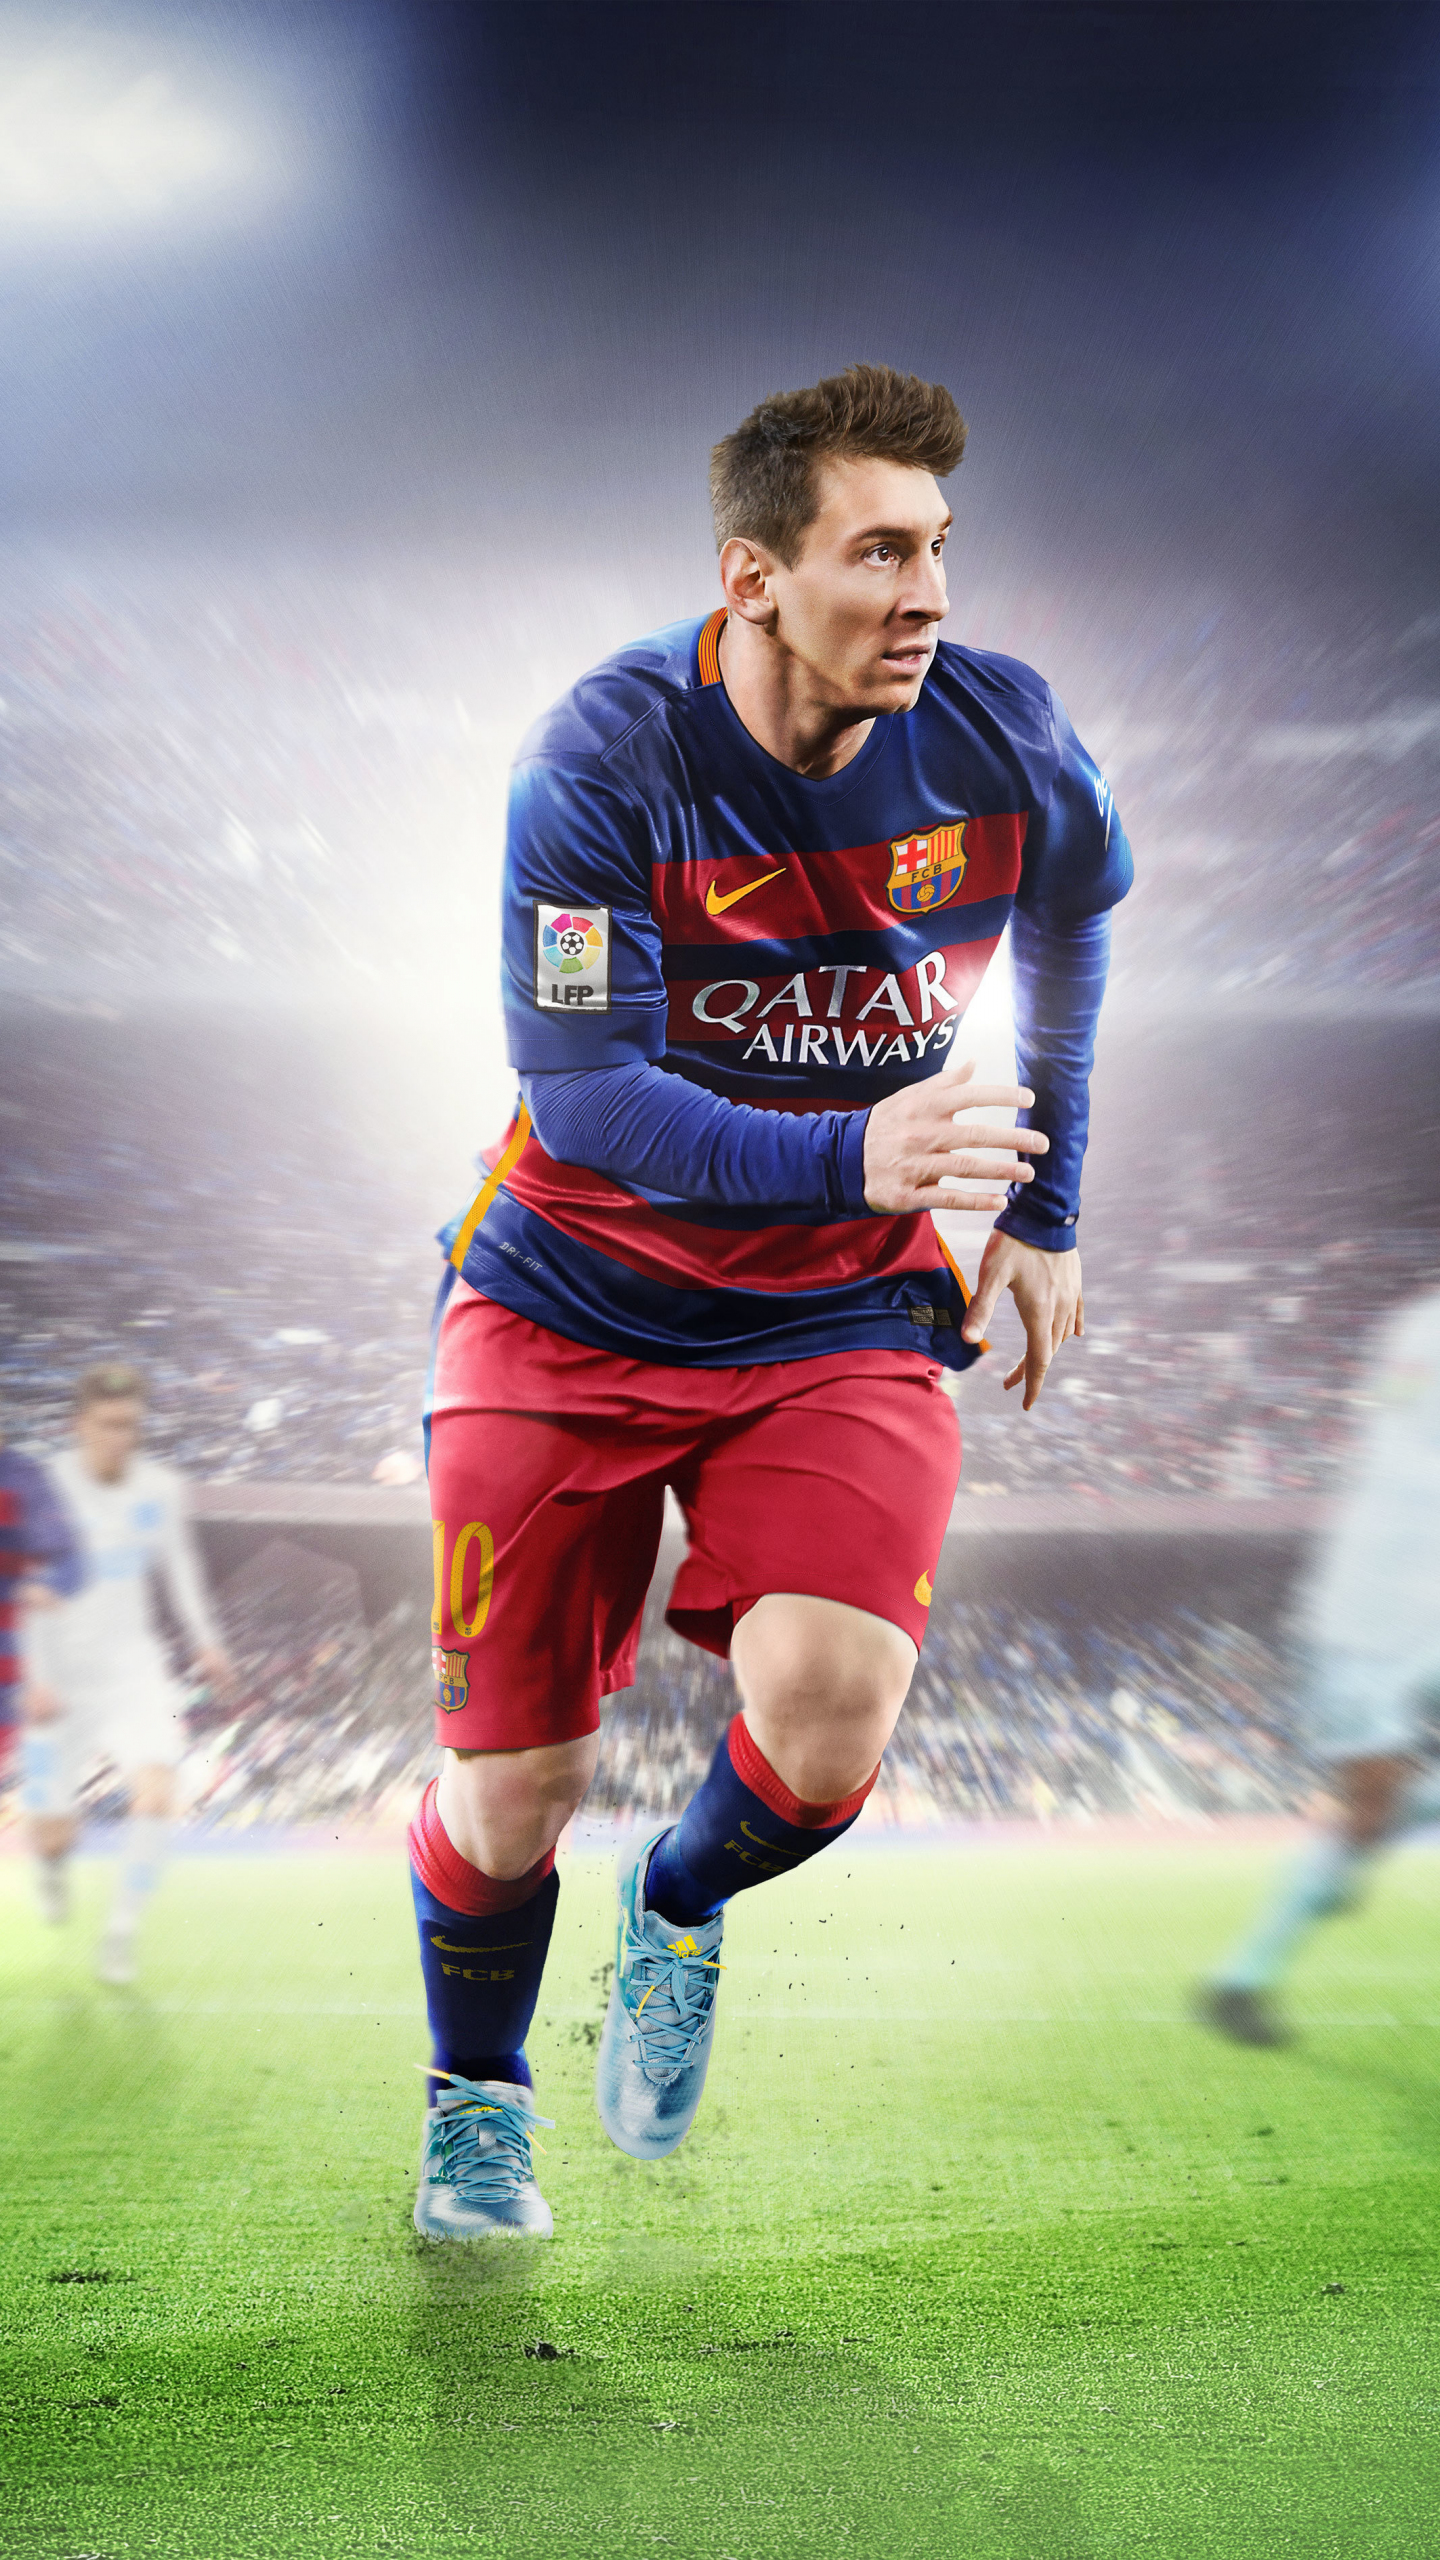 Lionel Messi là một trong những cầu thủ vĩ đại nhất của thế giới, với kỹ năng cao siêu và tinh thần chiến đấu mãnh liệt. Hãy cùng xem các pha tranh bóng tuyệt vời của anh ta, cảm nhận sức mạnh và tài năng của một ngôi sao bóng đá.